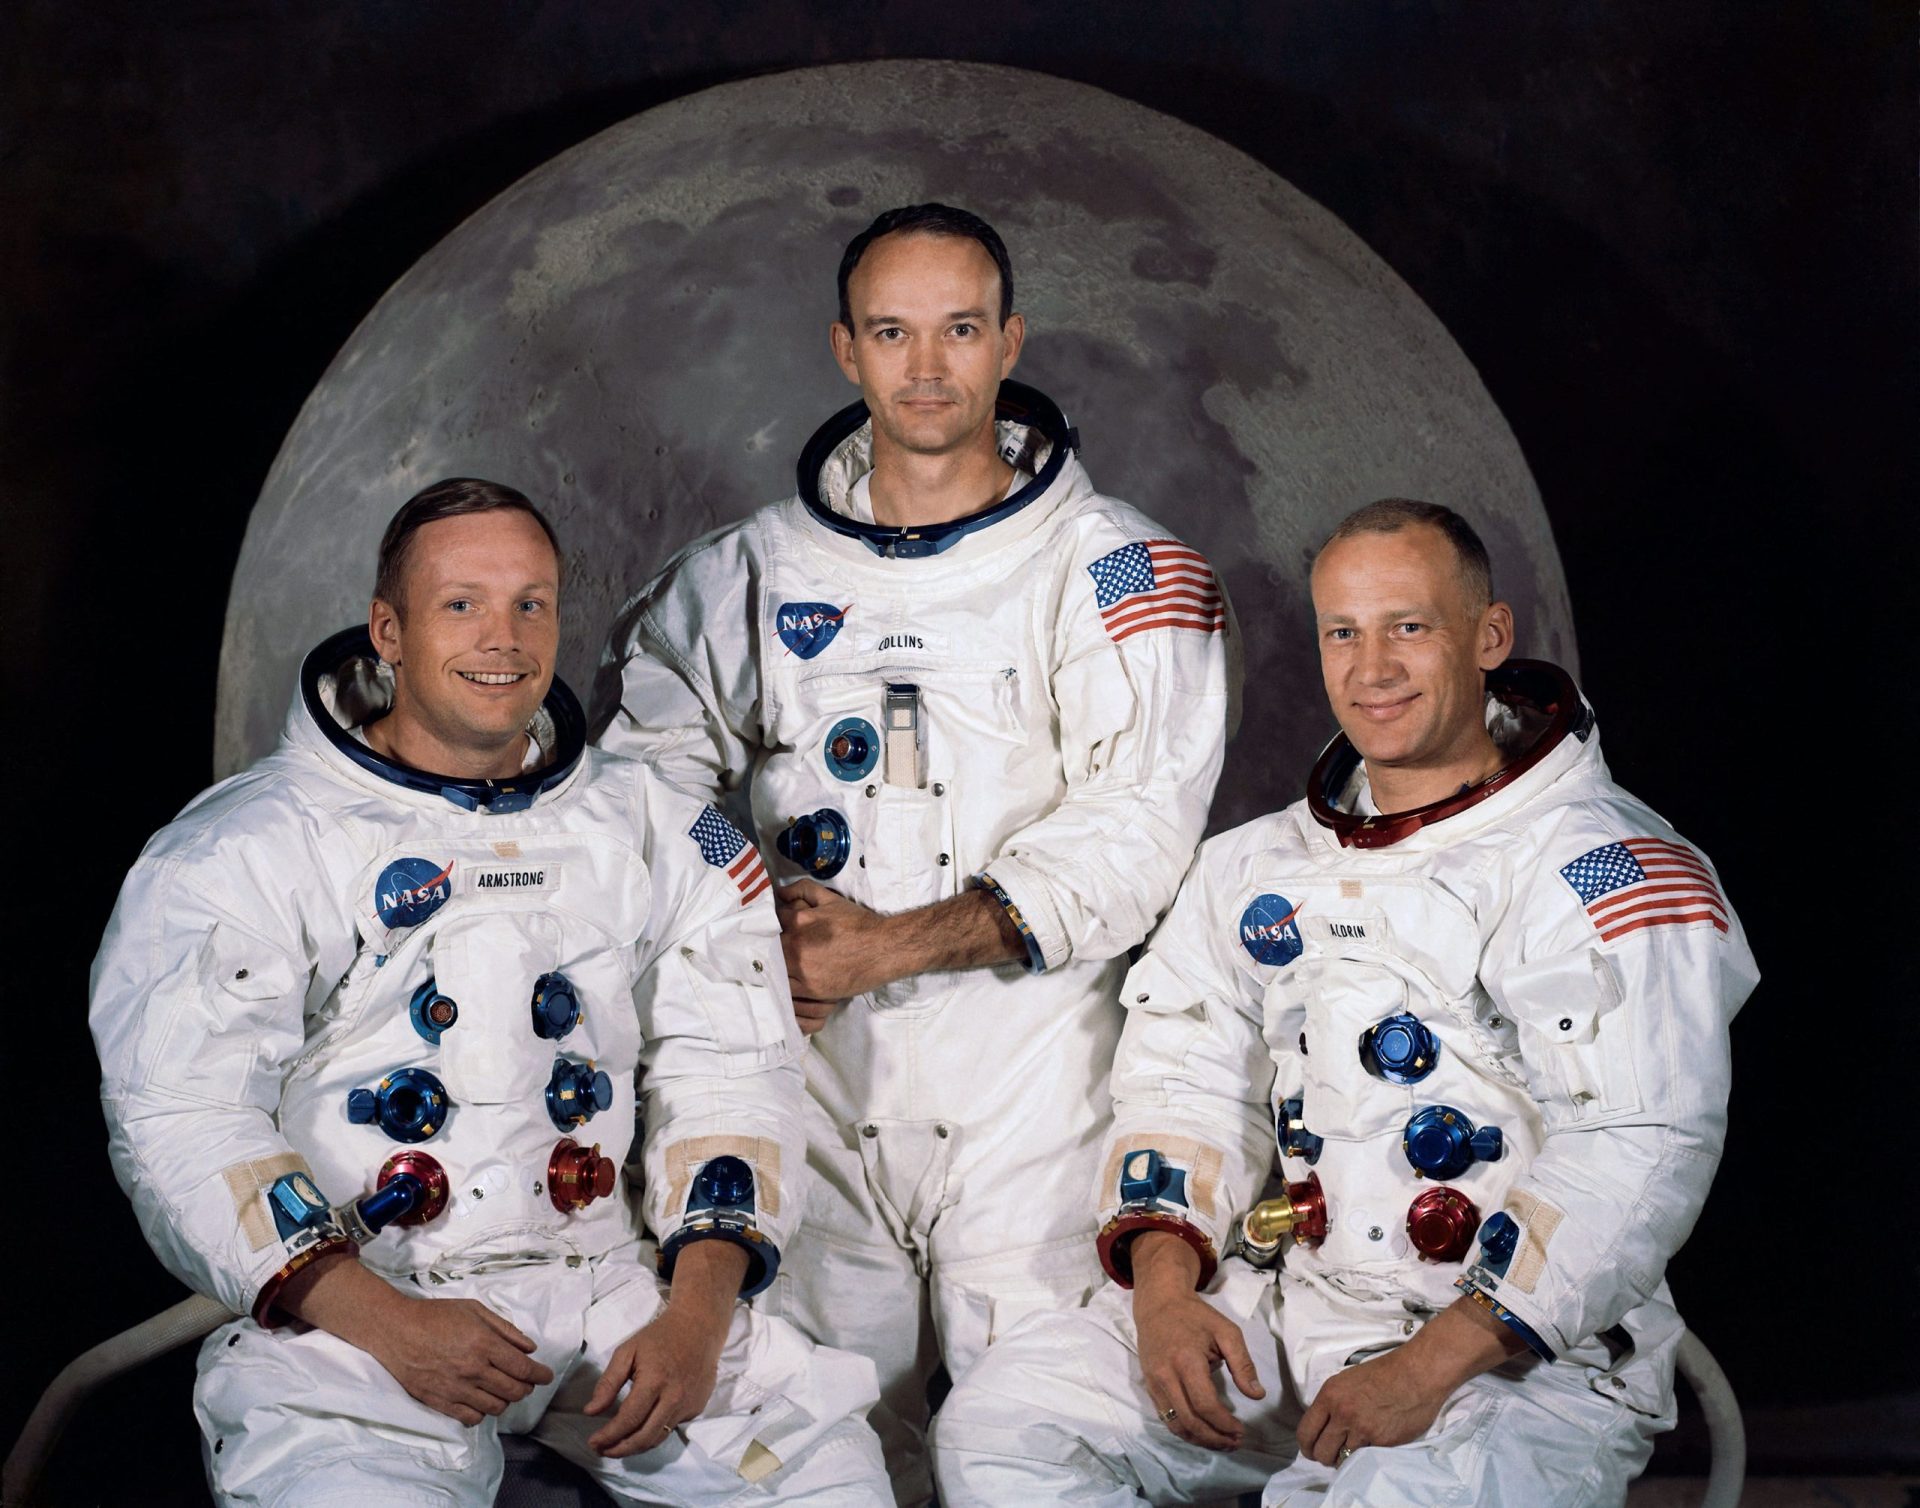 Morreu o astronauta Michael Collins, um dos três elementos da missão Apollo 11